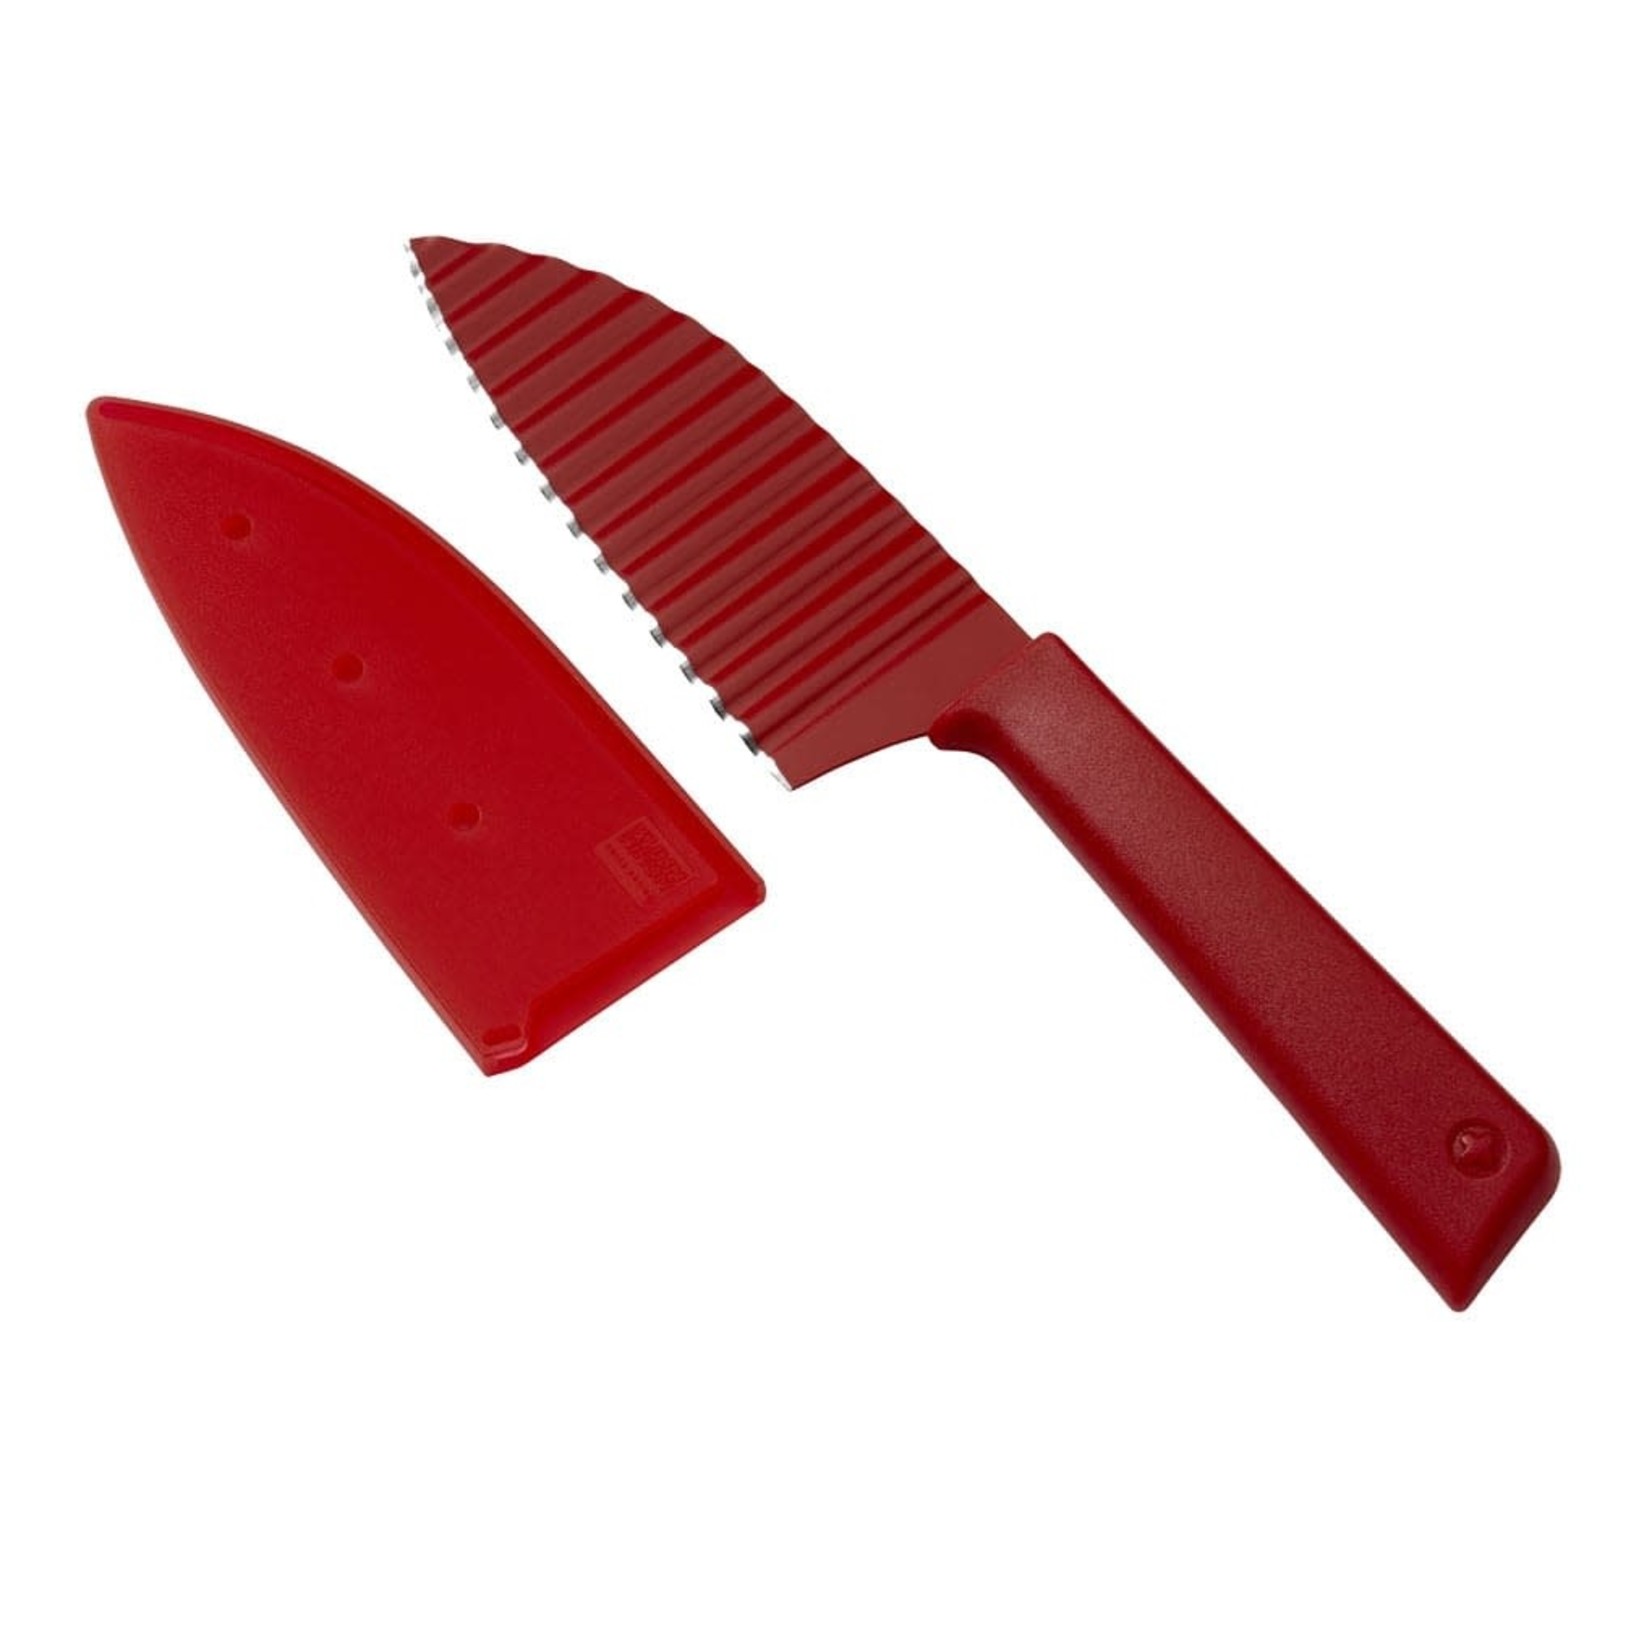 KUHN KUHN Krinkle Cut Knife - Red